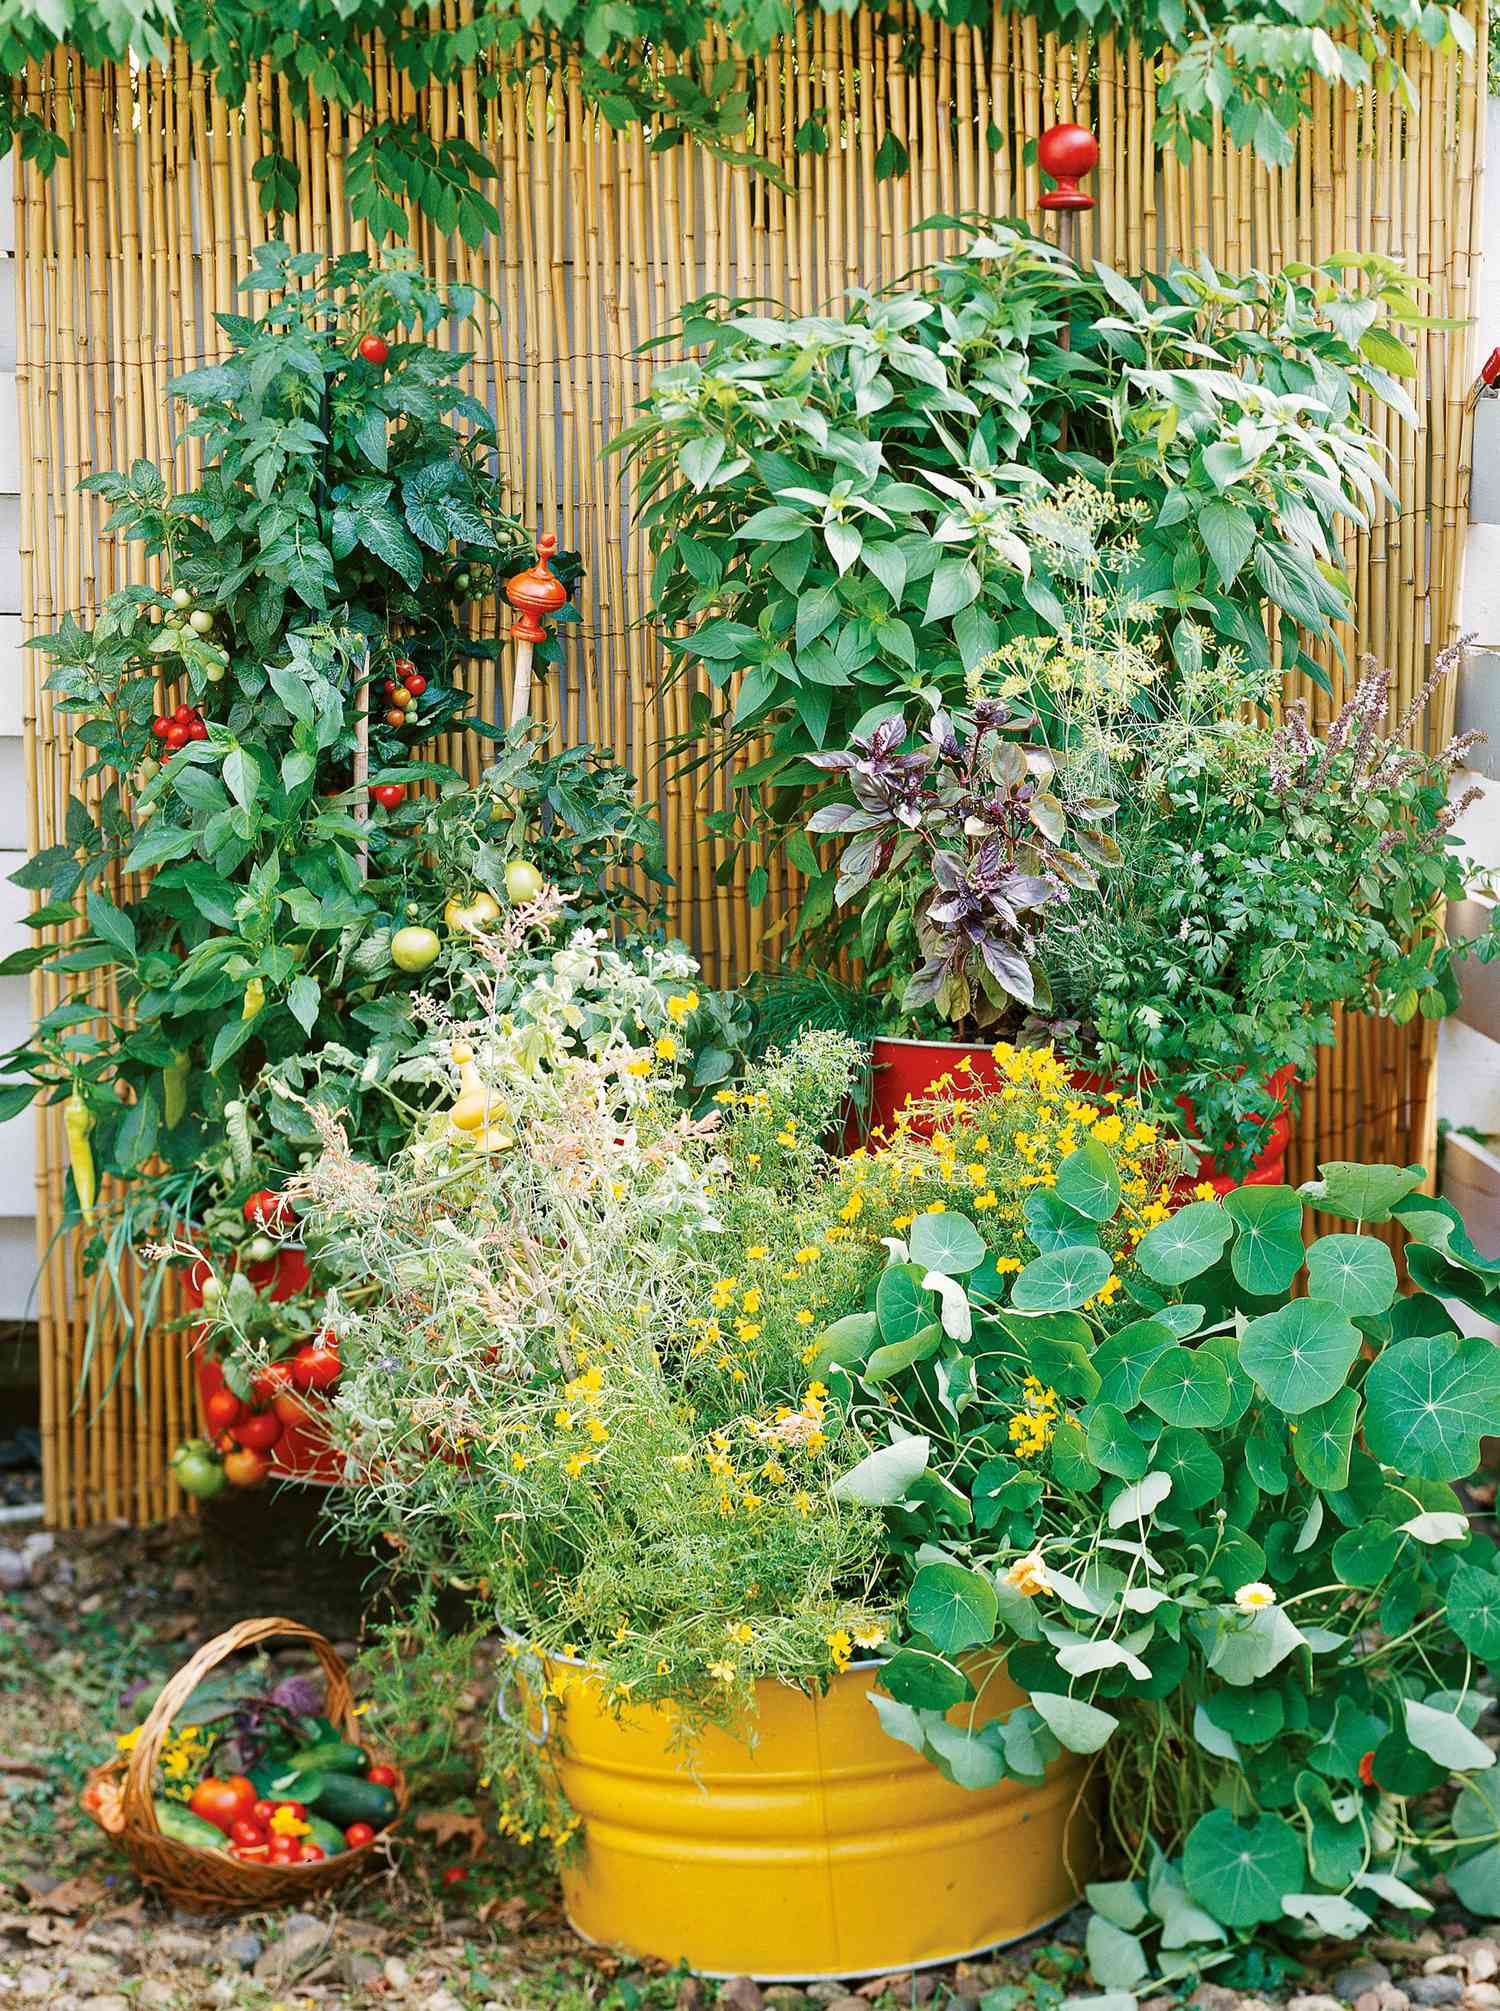 how to start a beginner vegetable garden from scratch | better homes